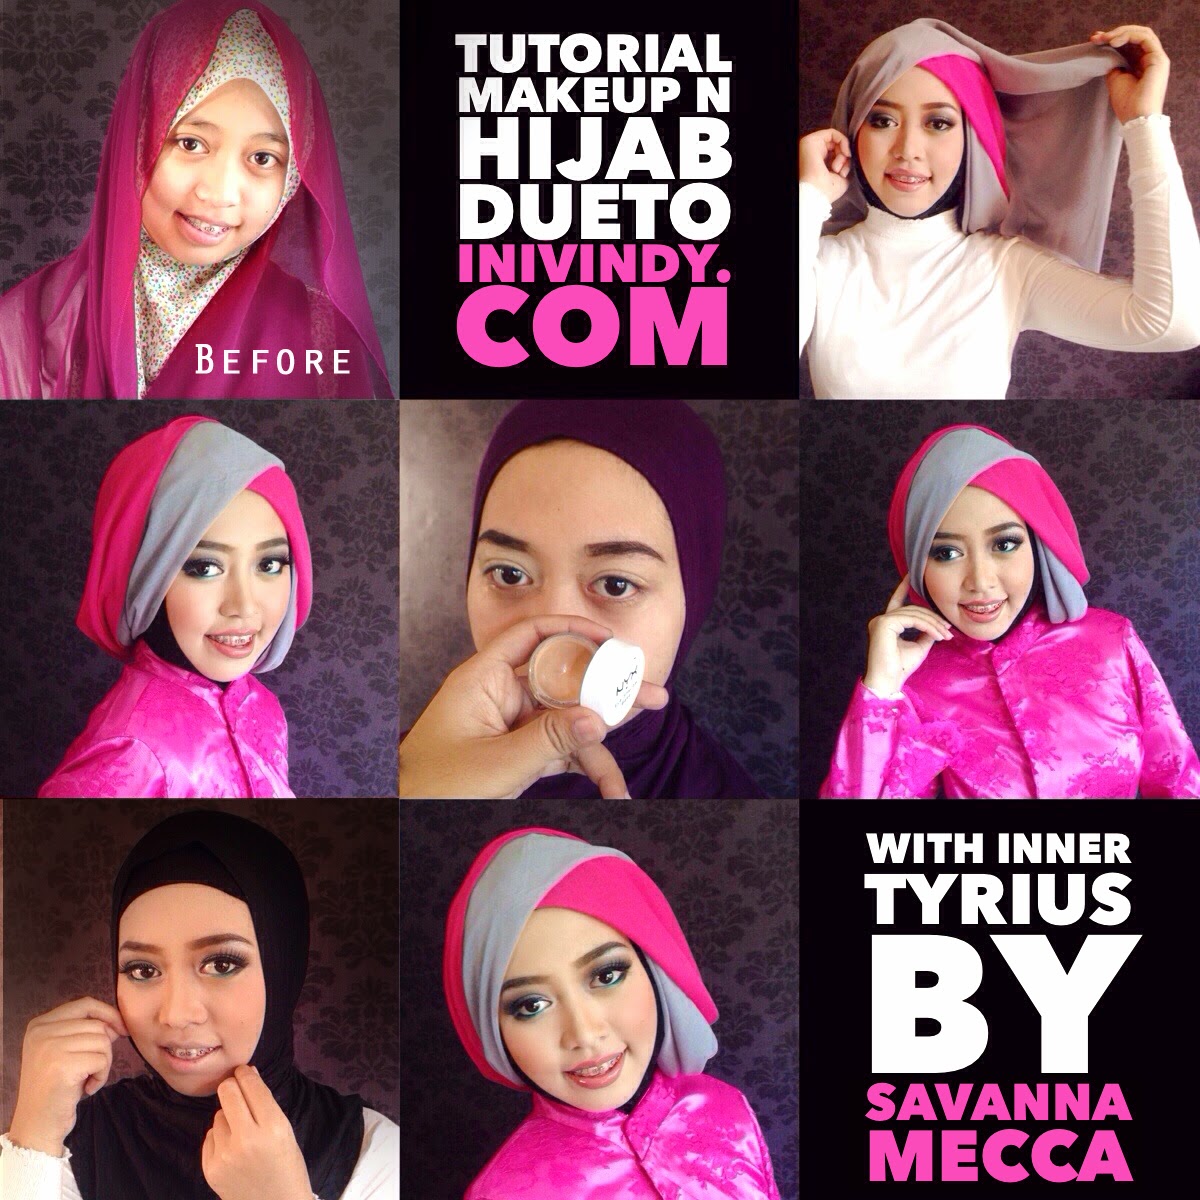 Ini Vindy Yang Ajaib Dueto Hijab Tutorial Menggunakan Inner